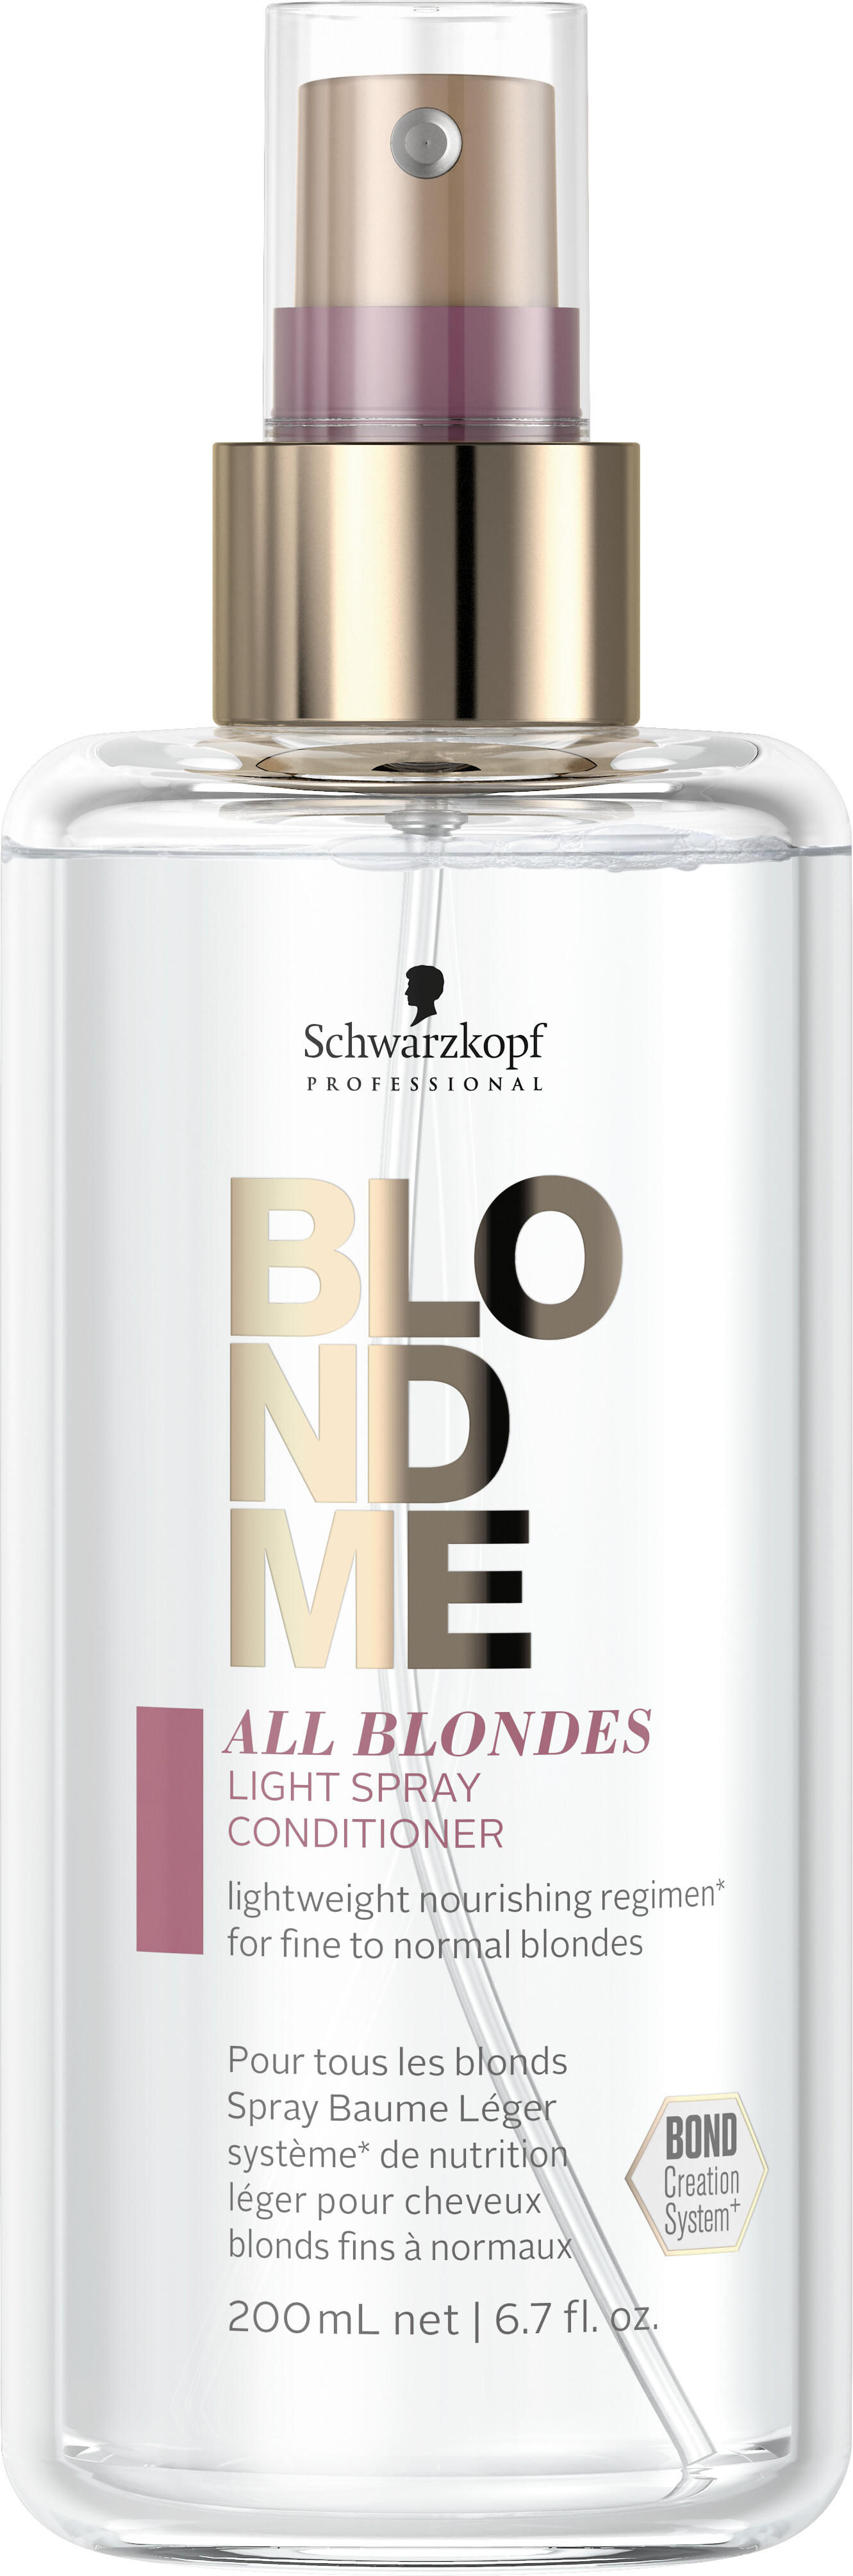 Schwarzkopf Professional BlondMe All Blondes Light Spray Conditioner 200ml